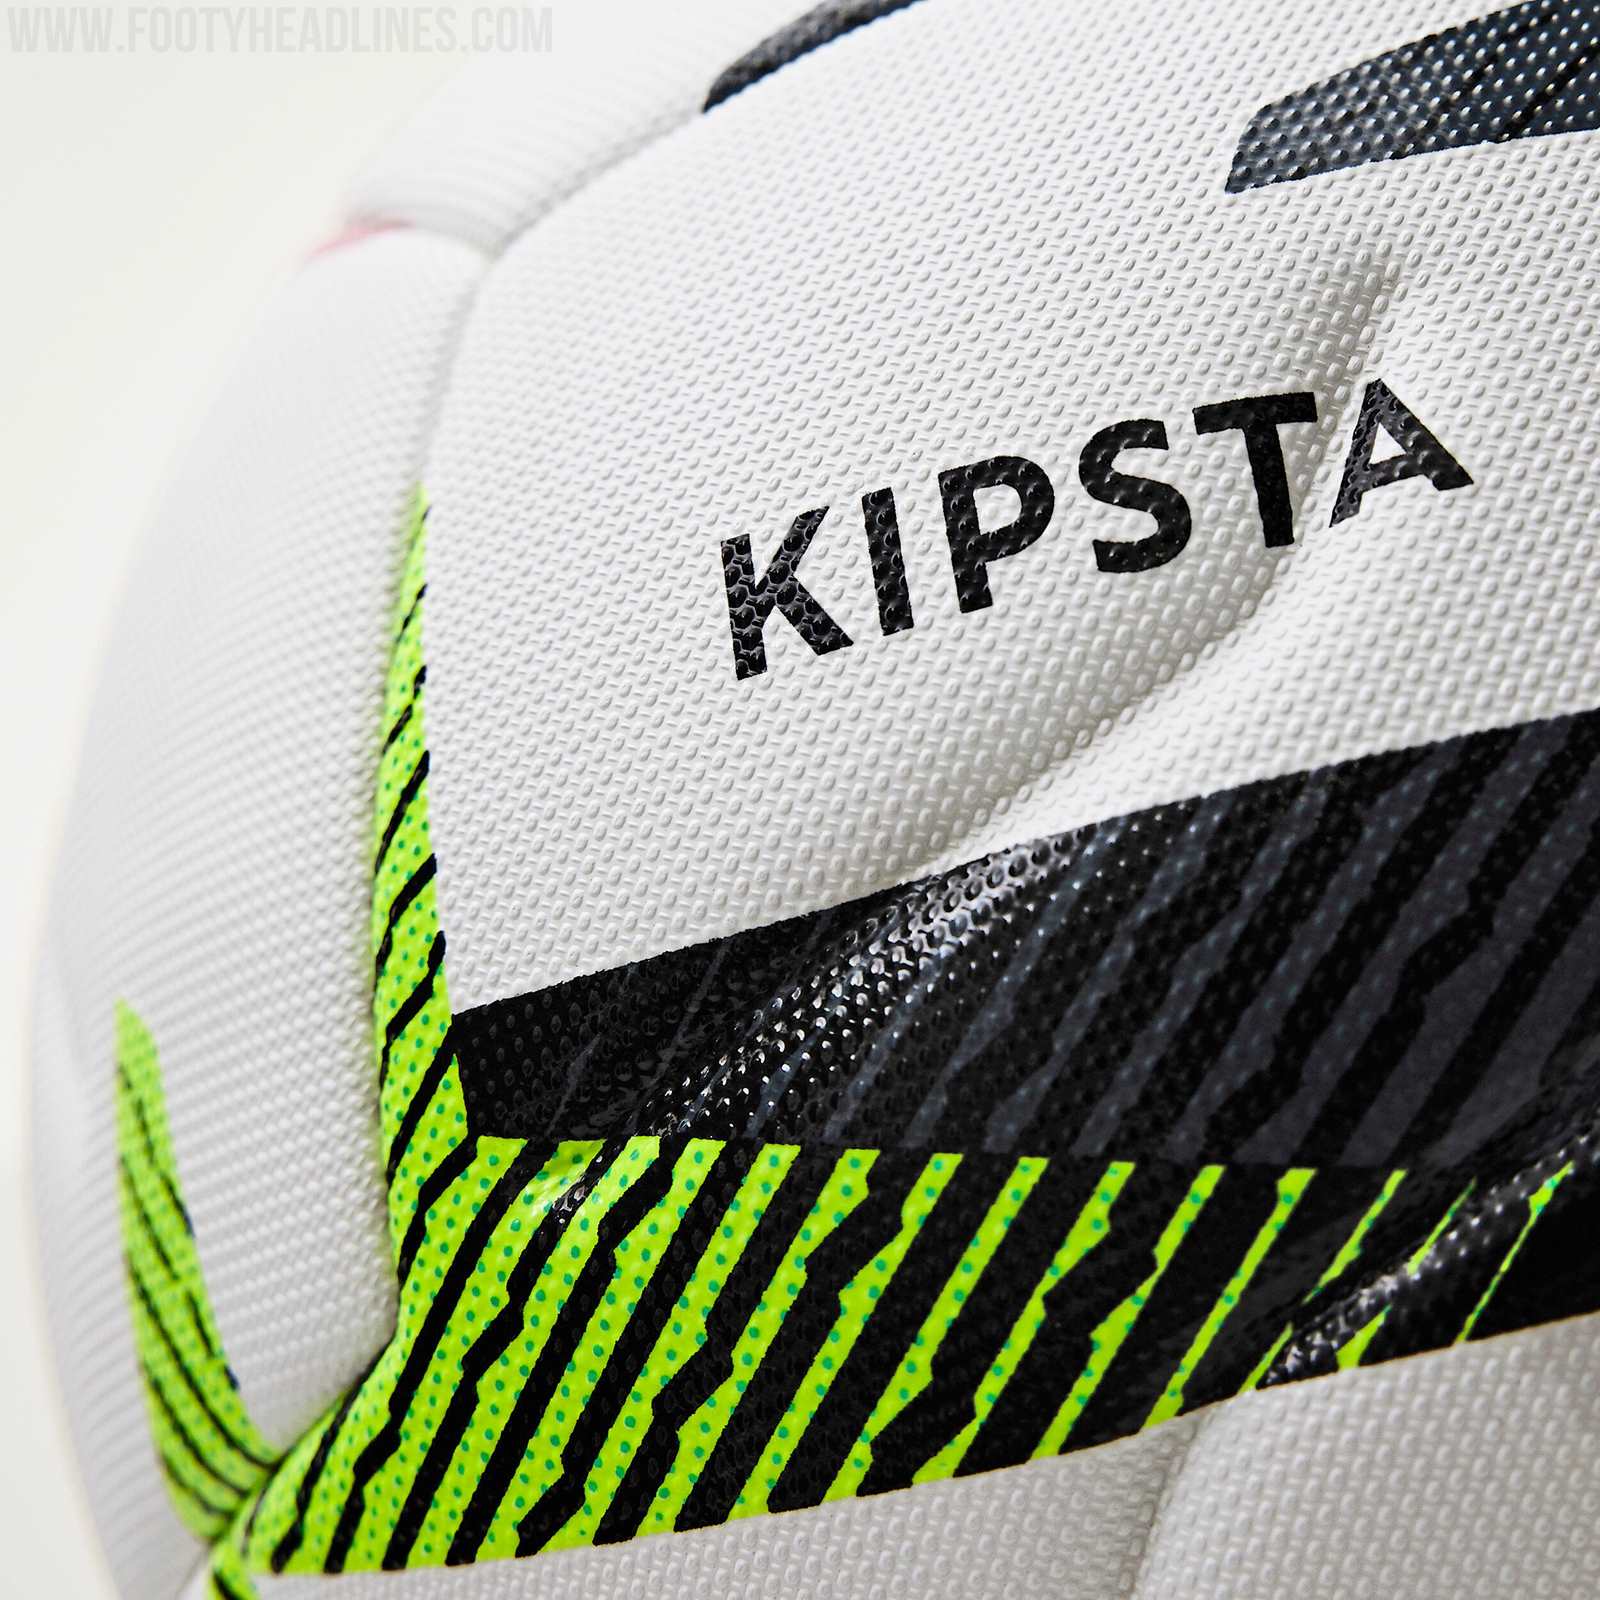 Kipsta official match balls